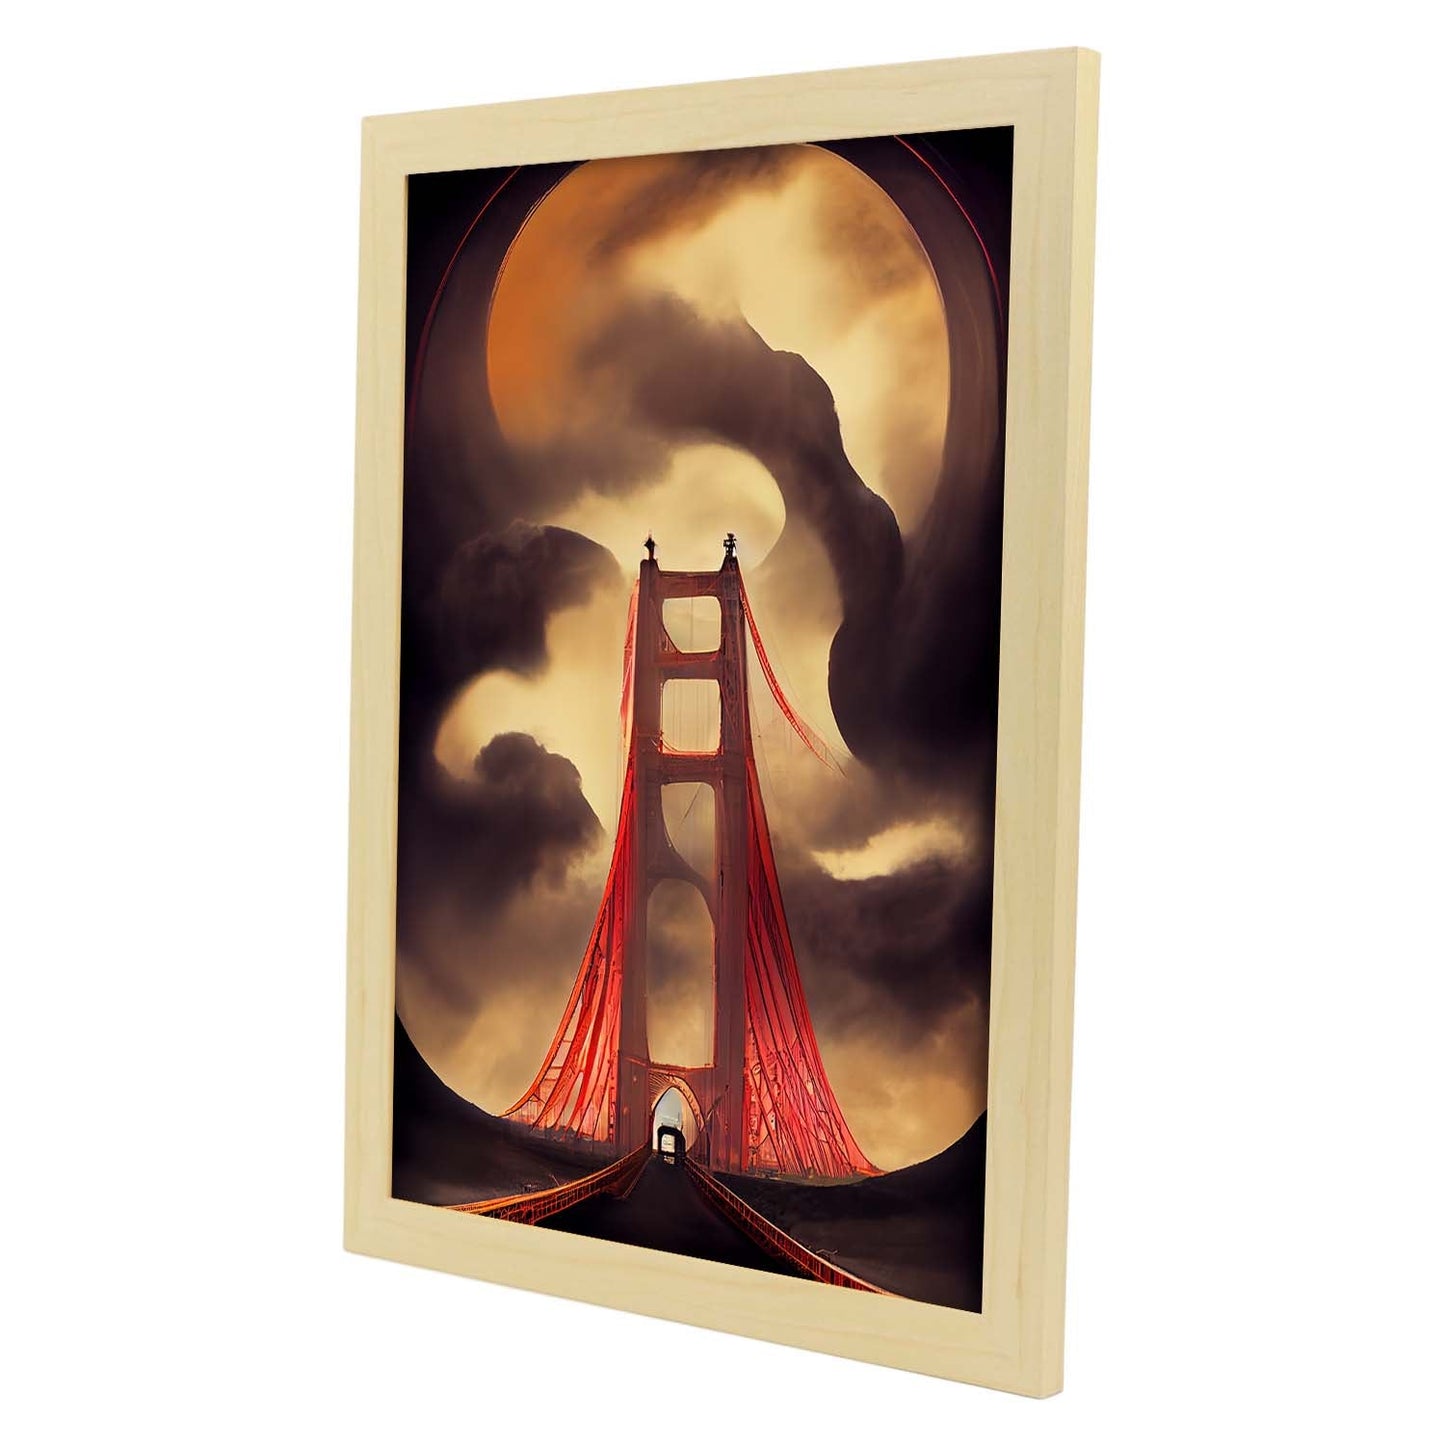 Nacnic Lámina Puente Golden Gate Humilde al estilo de T. Burton. Ilustraciones de monumentos, ciudades, paises inspiradas en arte gótico y oscuro. Diseño y Decoración de Interiores.-Artwork-Nacnic-Nacnic Estudio SL